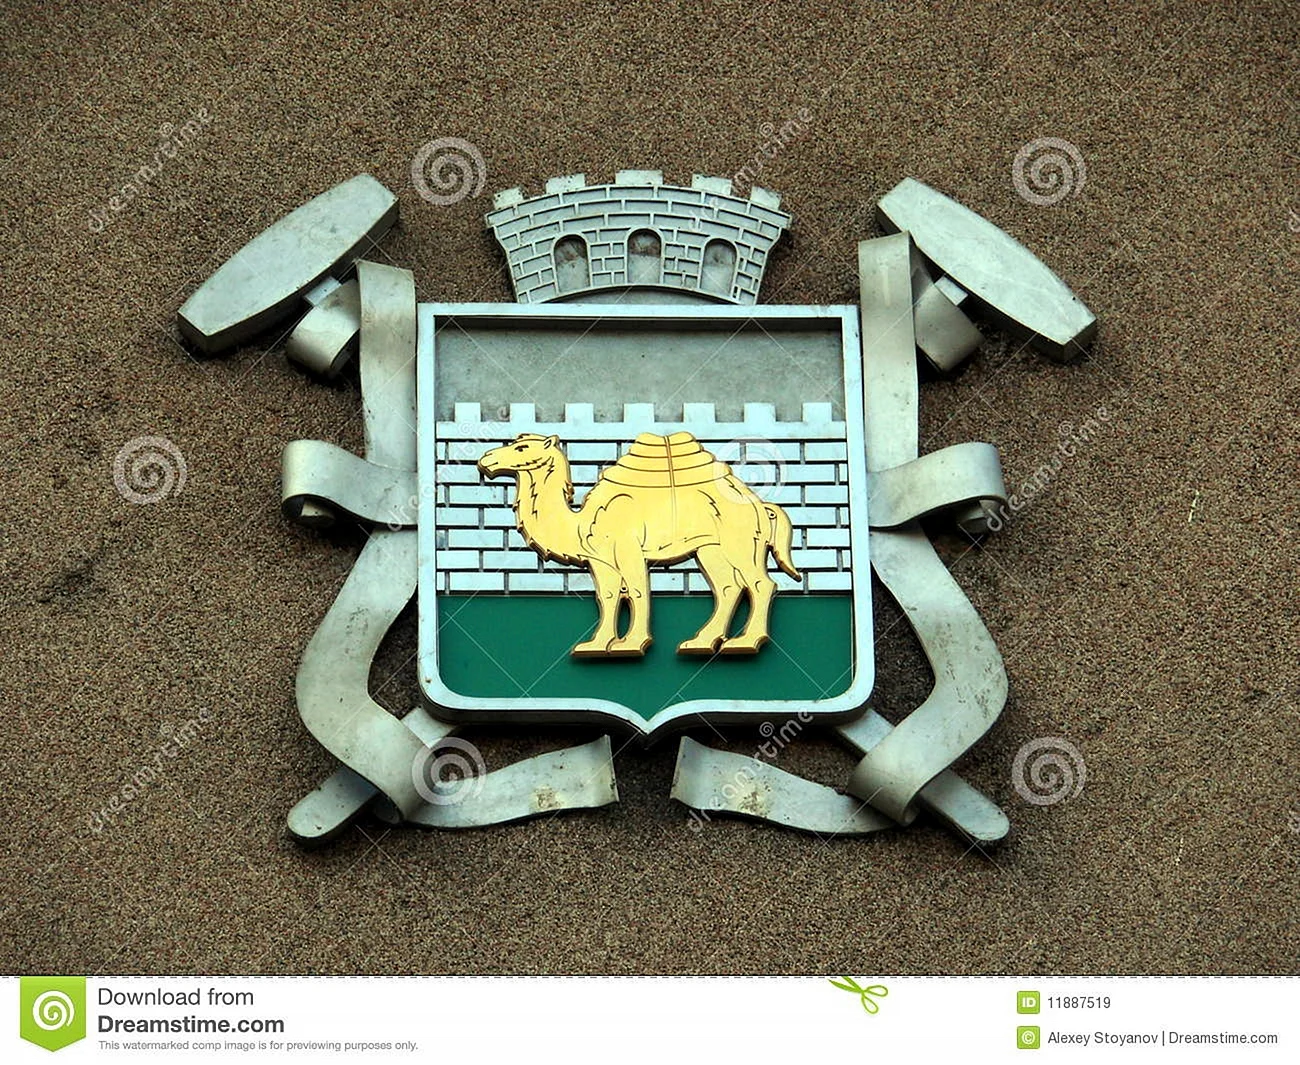 Верблюд символ Челябинска